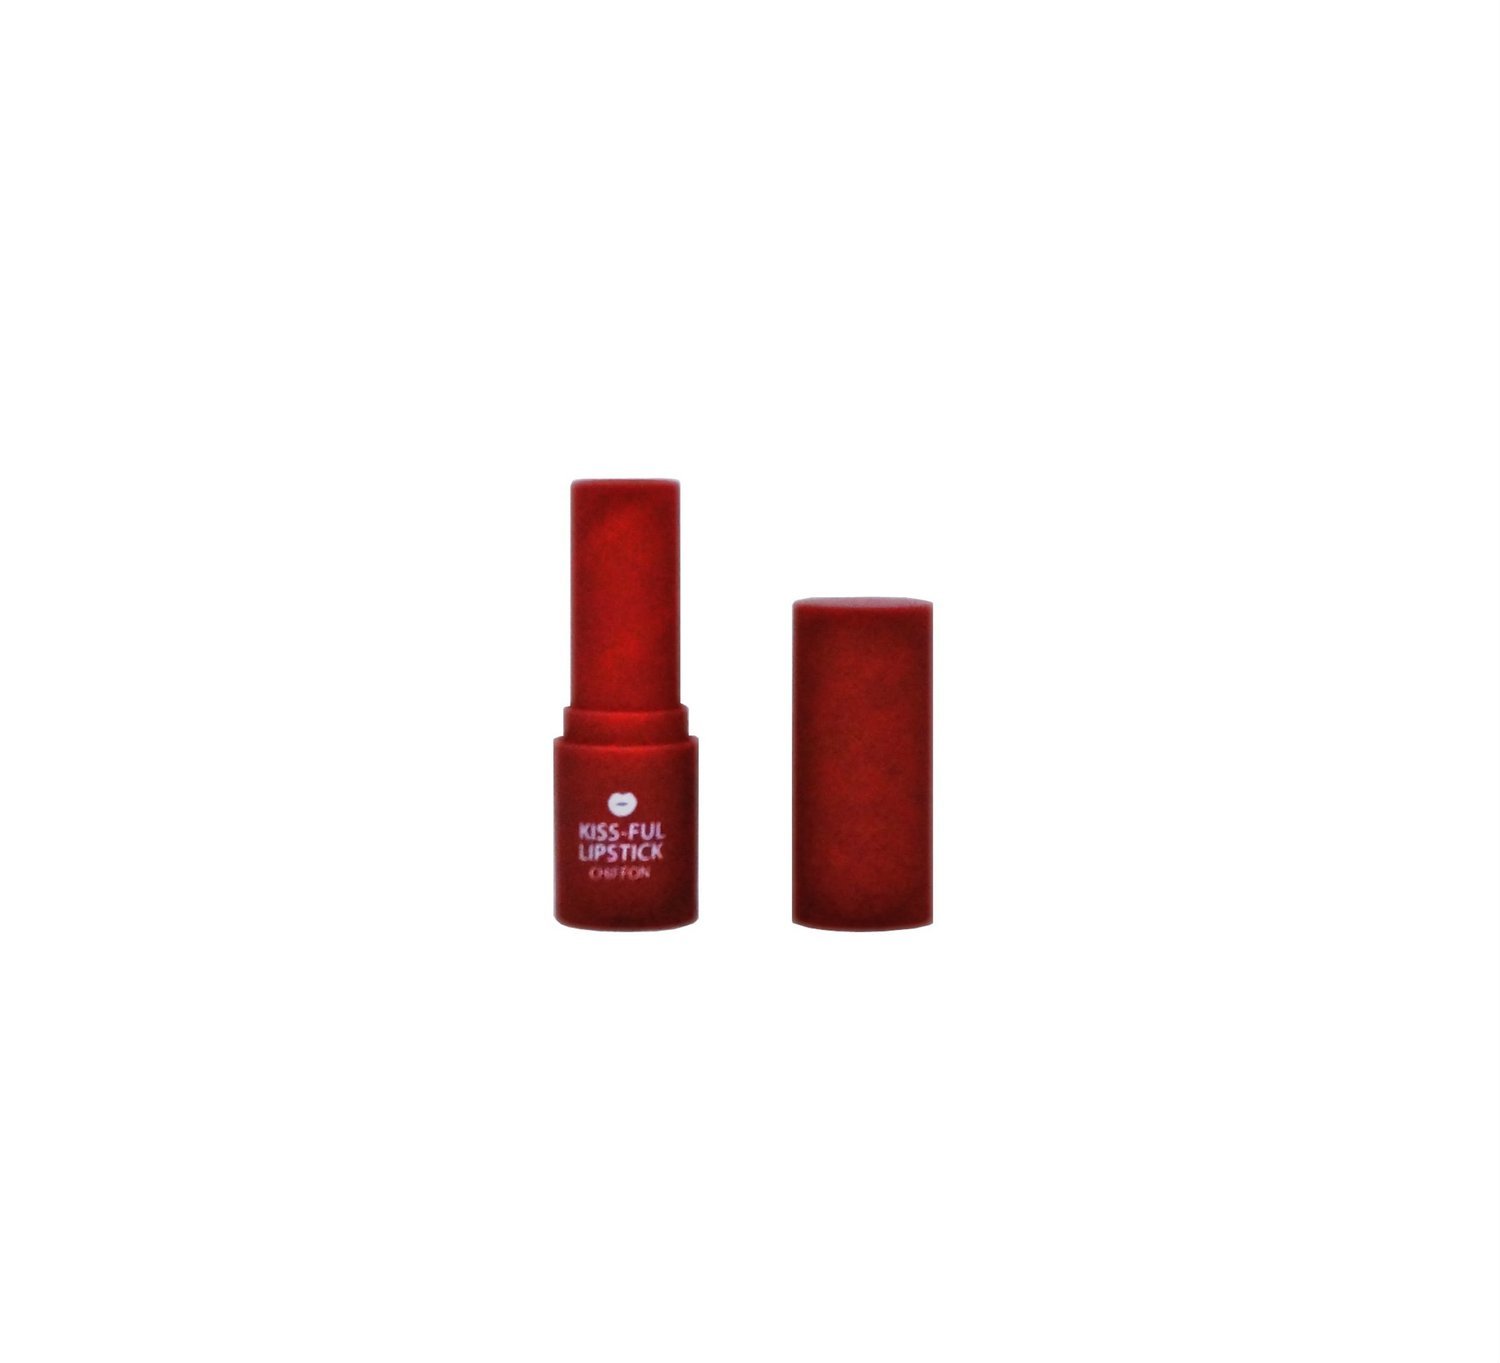 Burgundy Kiss-full Lipstick Bottle